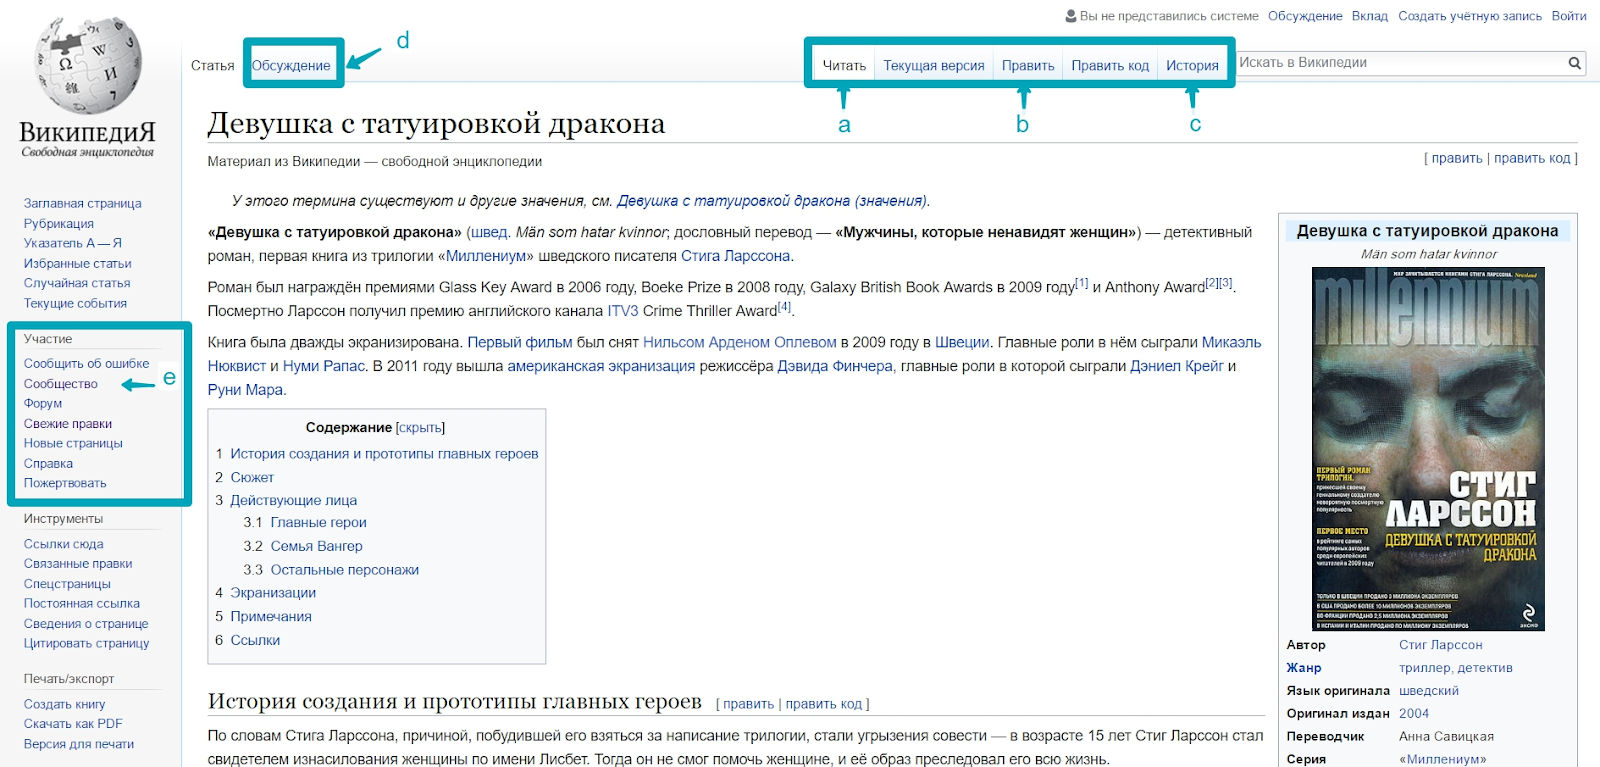 Википедия страница